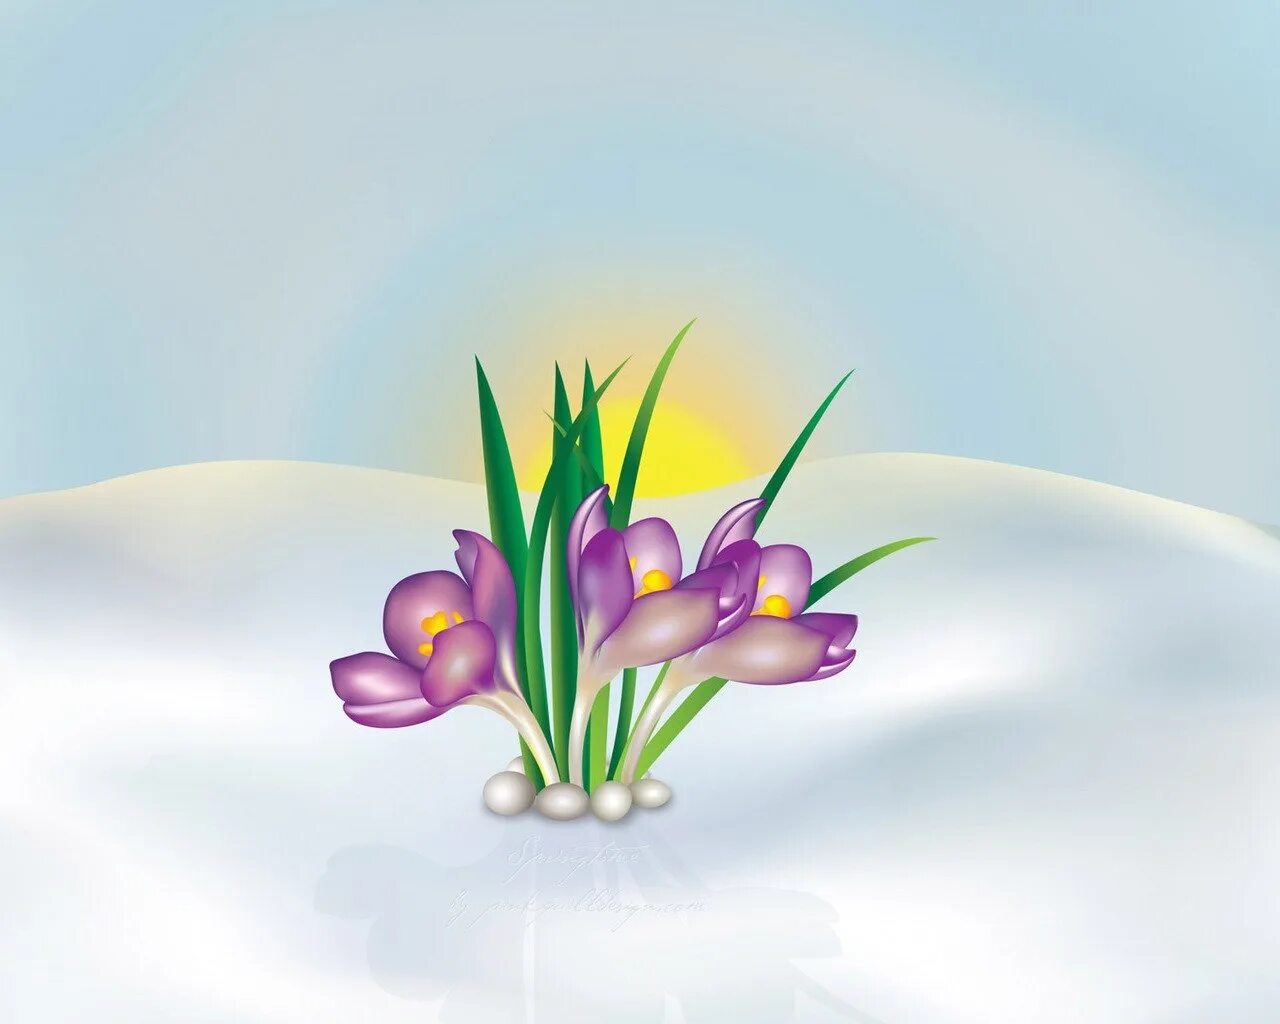 Картинка подснежники для детей в детском саду. Первоцветы крокусы. Весенний фон для презентации. Весенние цветы для детсада. Весенние цветы мультяшные.